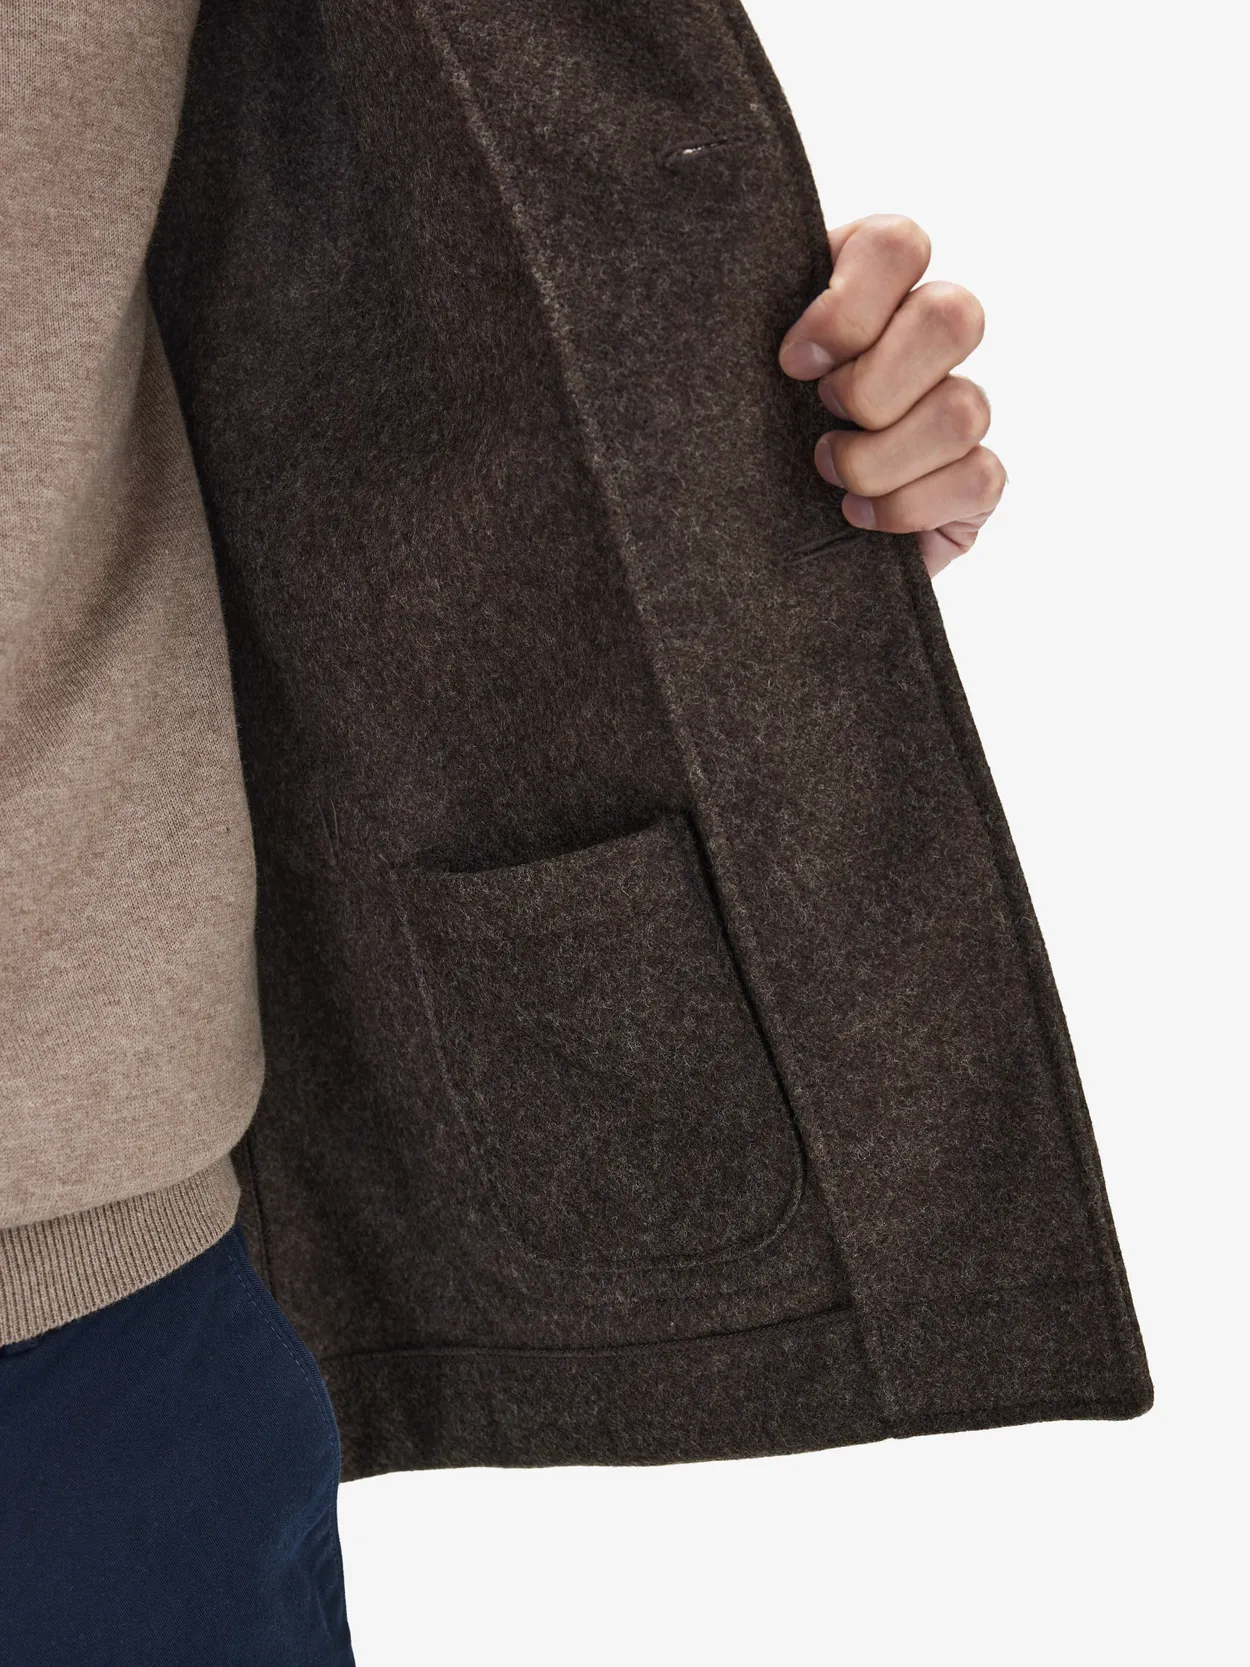 Cheap Womens Winter Coats Lapel Sharpe Fleece Patchwork Pocket